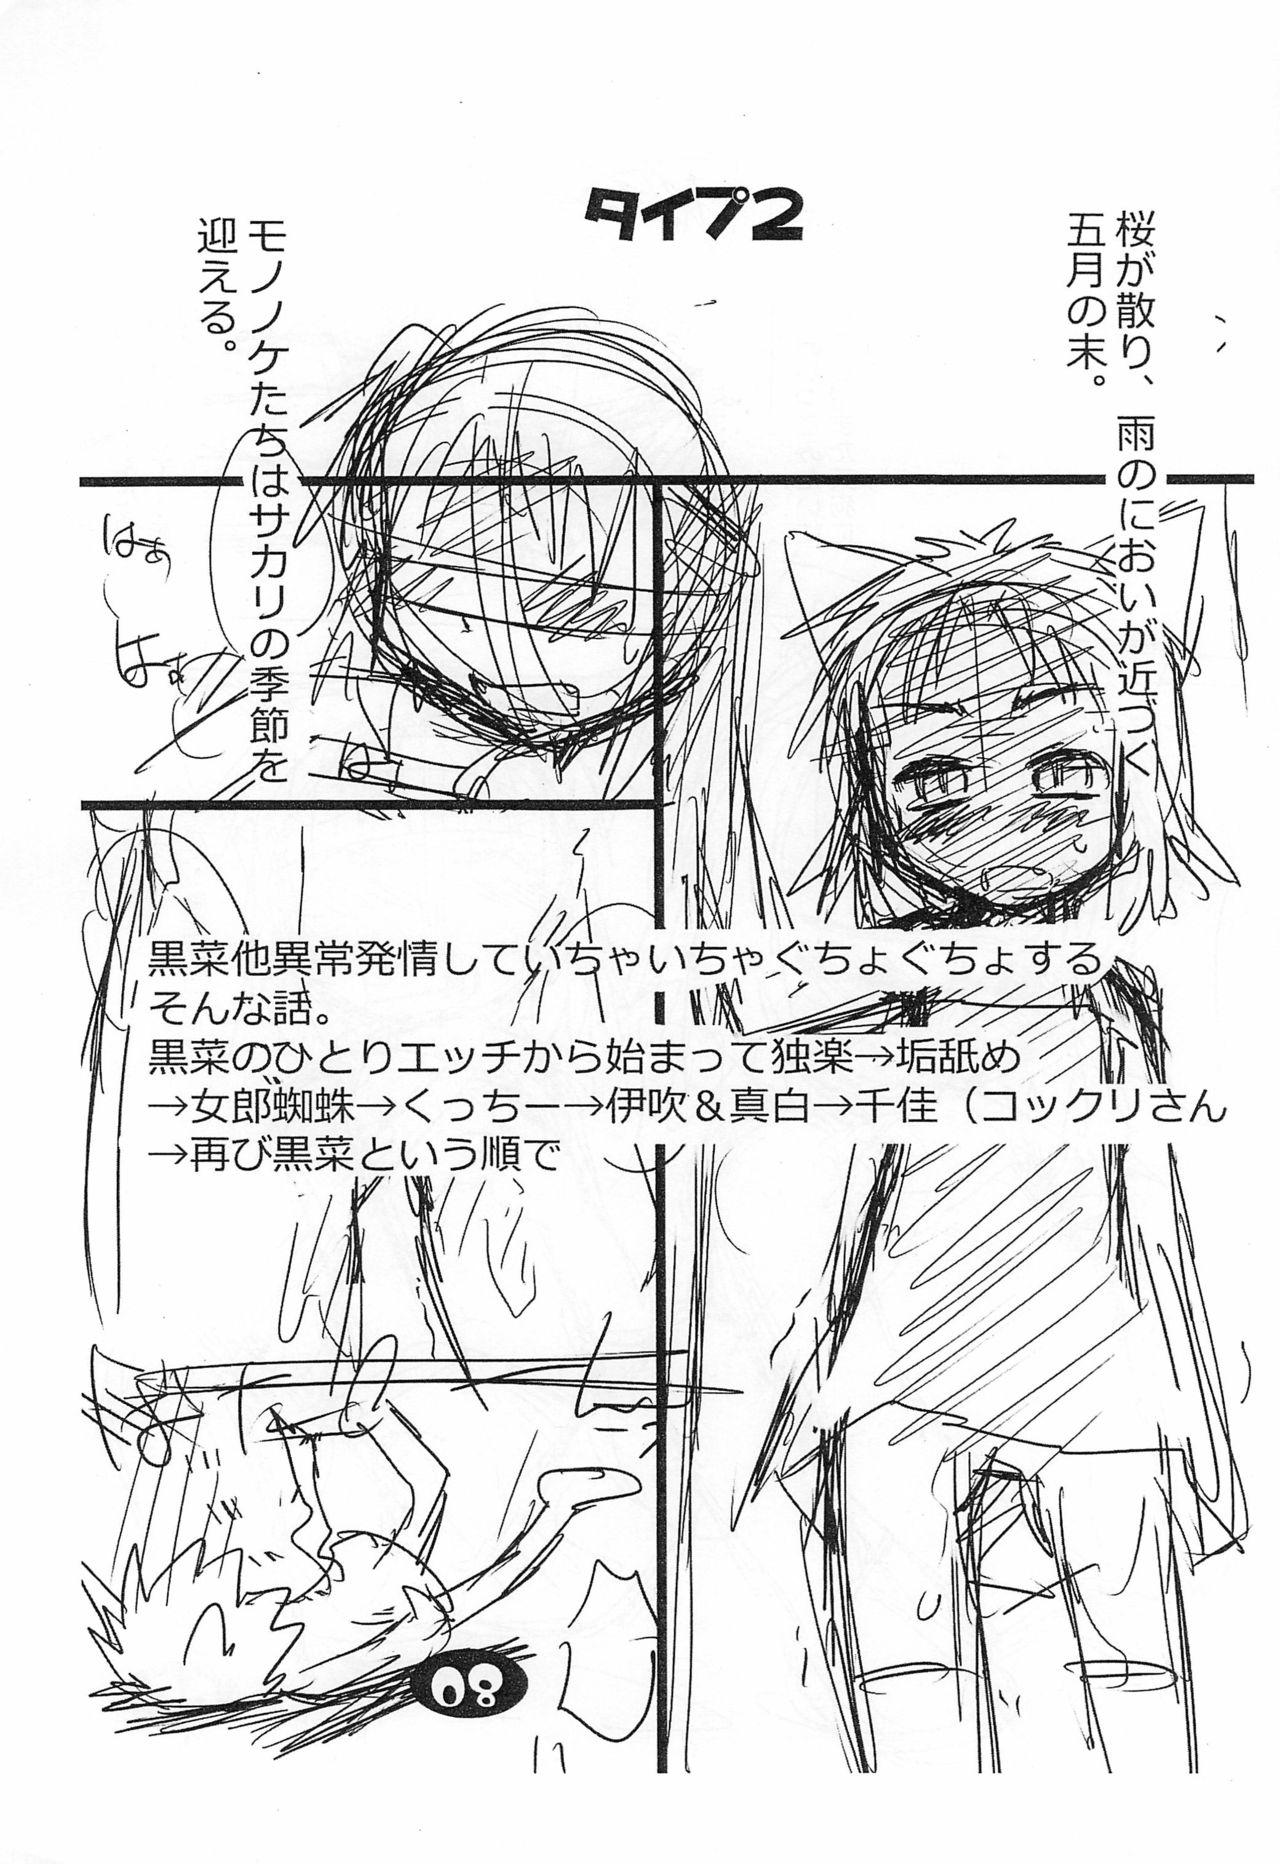 Beauty (Puniket 30) [Ware PON! (KONKON)] Nuko Musume-ppoi Offset Junbi-gou (Neko Musume Michikusa Nikki) - Neko musume michikusa nikki Party - Page 9